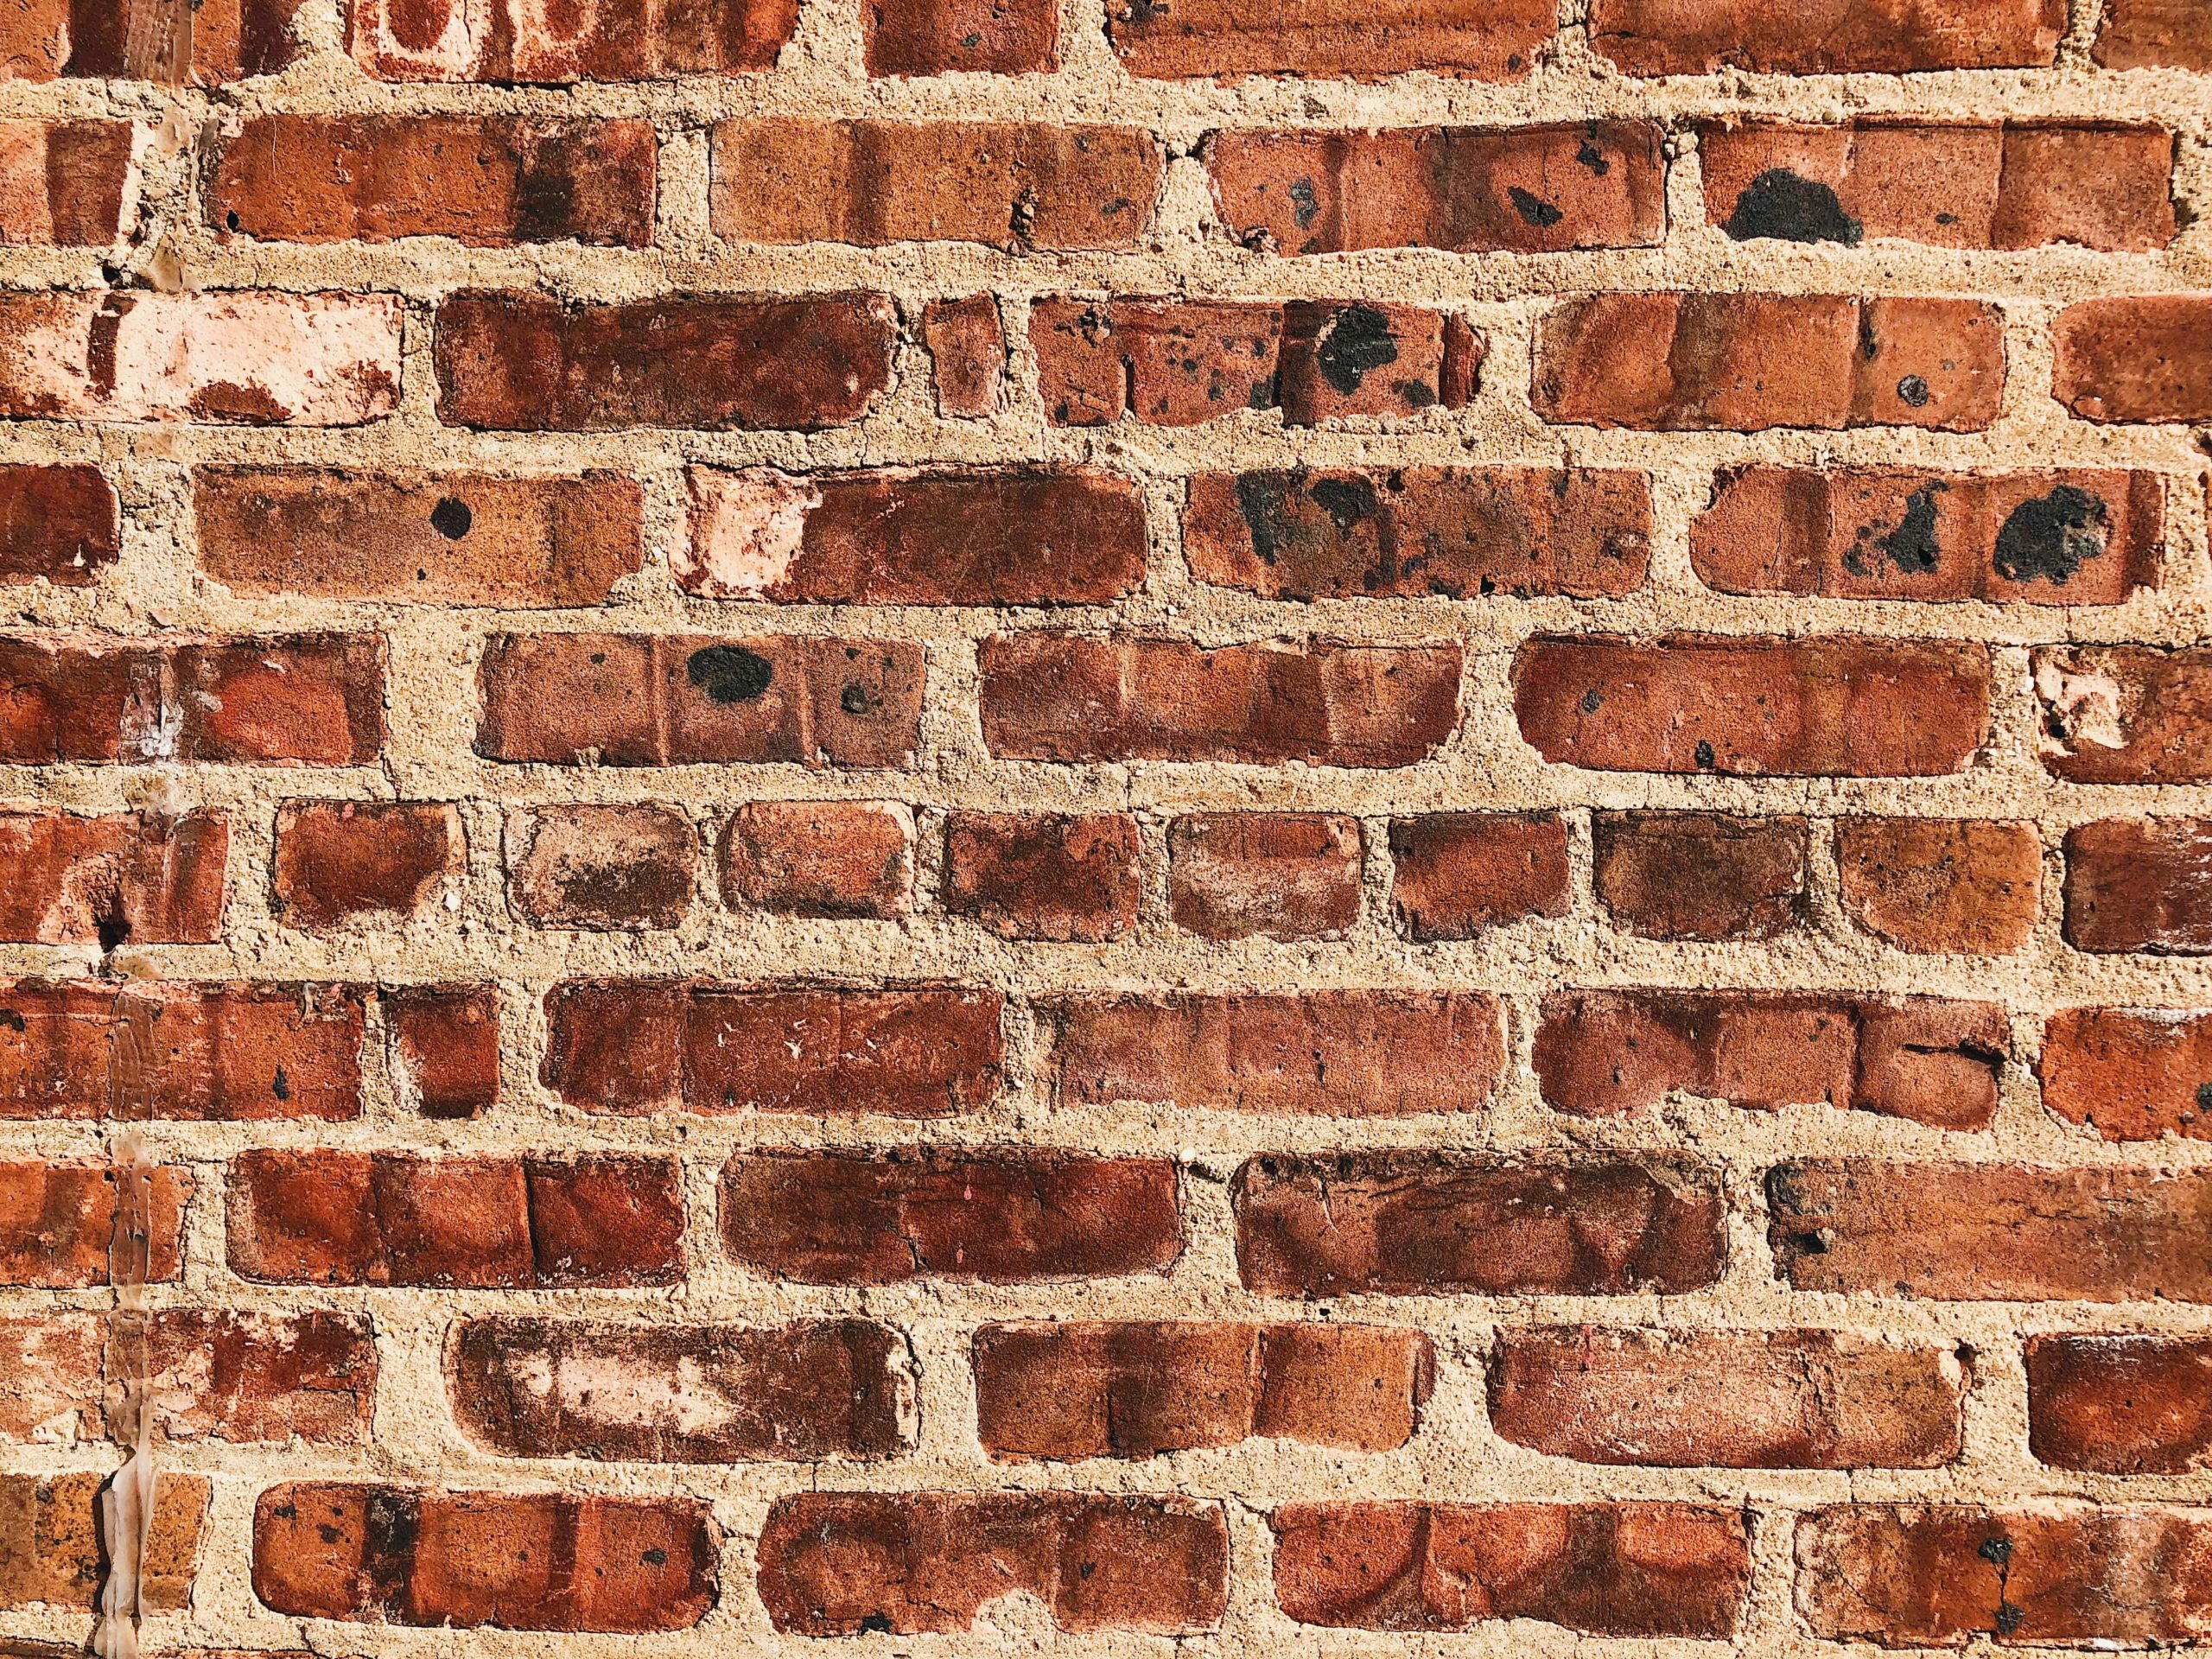 A brick wall.